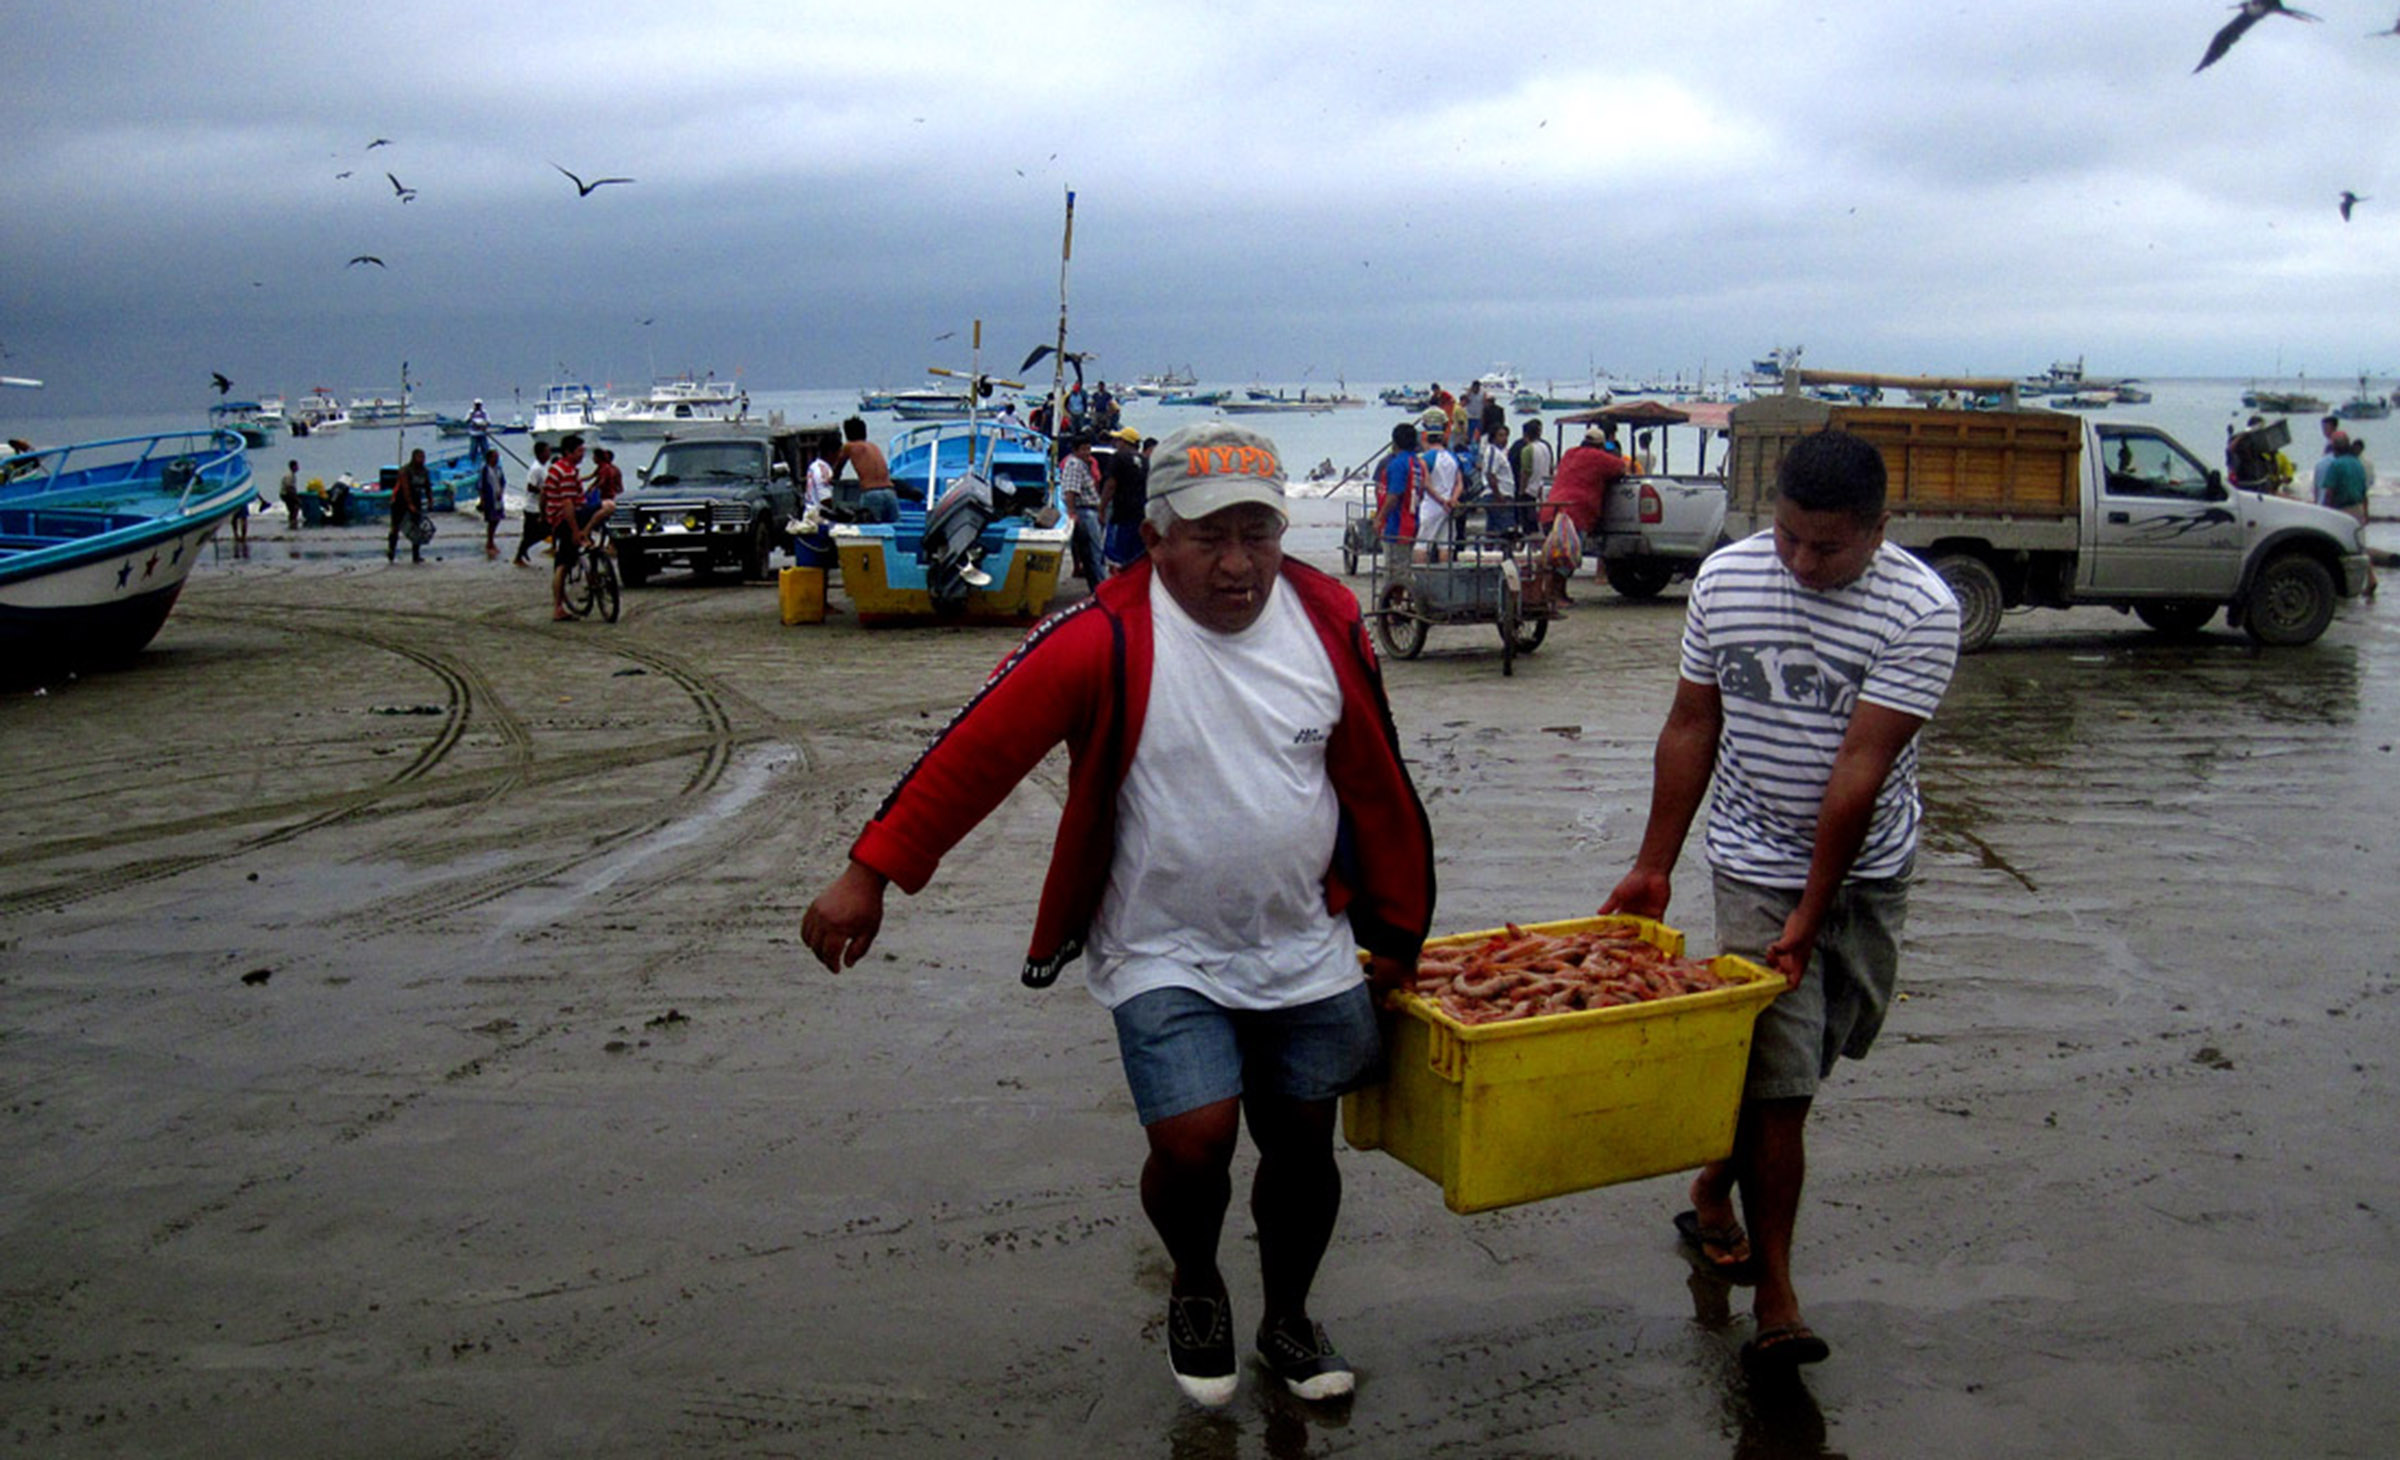 Beach landing / market in Ecuador